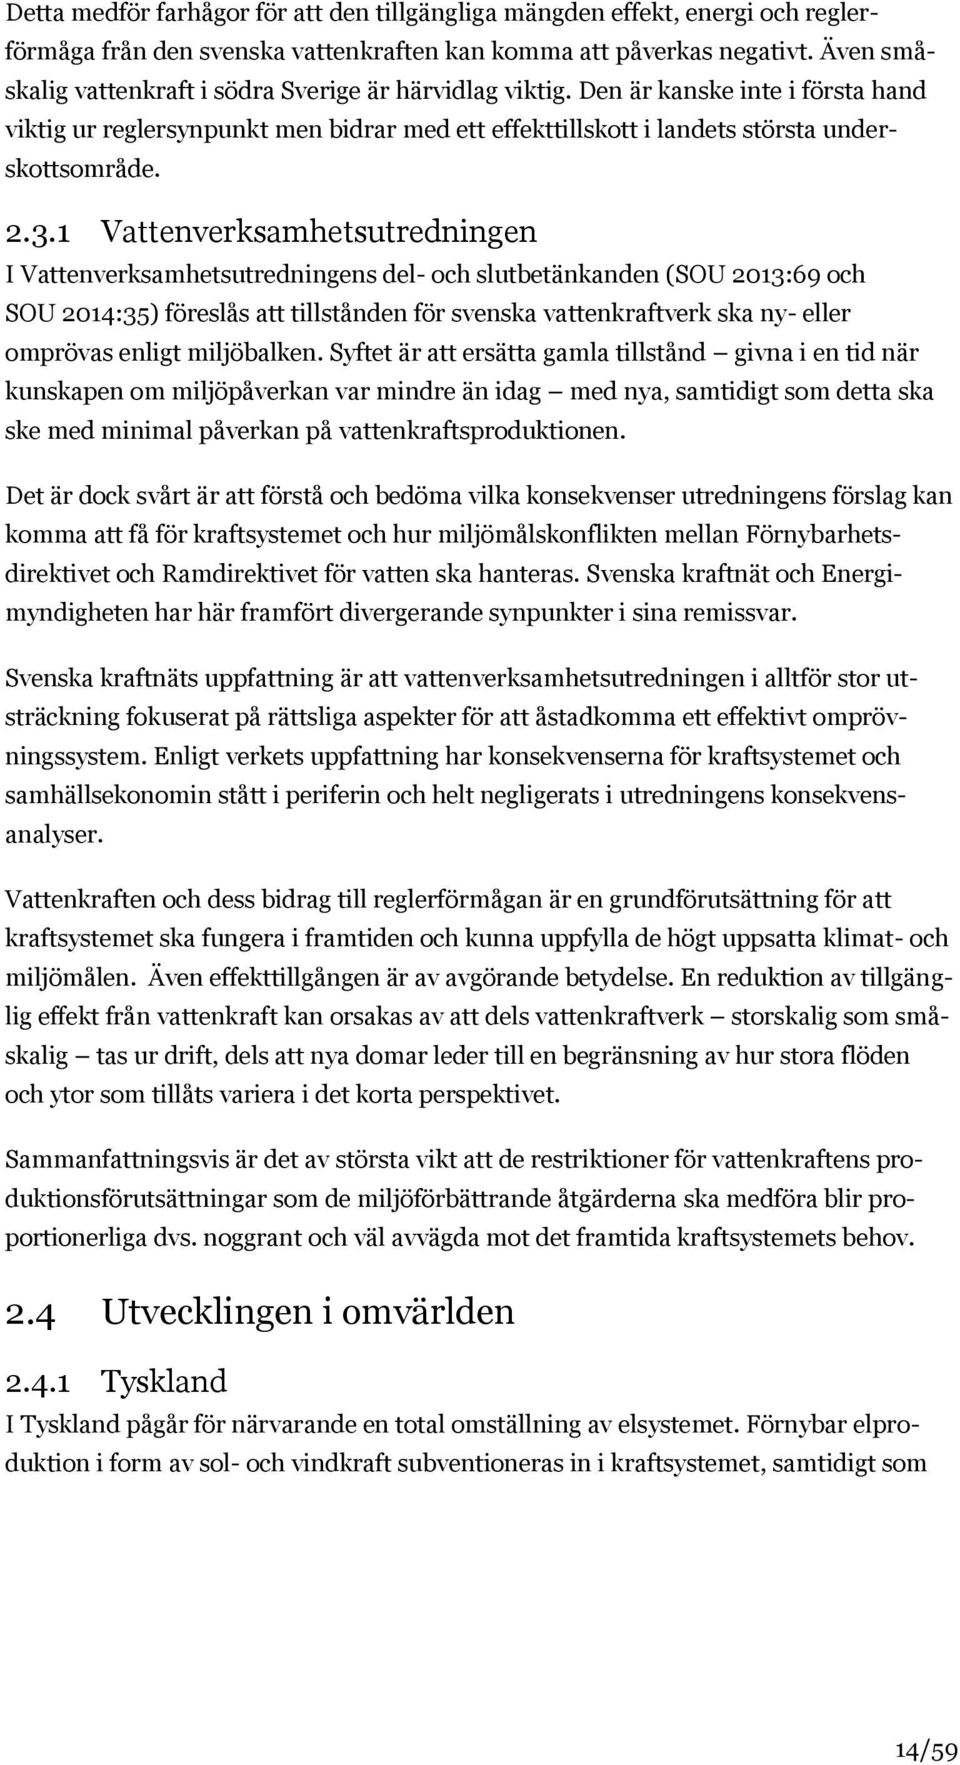 1 Vattenverksamhetsutredningen I Vattenverksamhetsutredningens del- och slutbetänkanden (SOU 2013:69 och SOU 2014:35) föreslås att tillstånden för svenska vattenkraftverk ska ny- eller omprövas